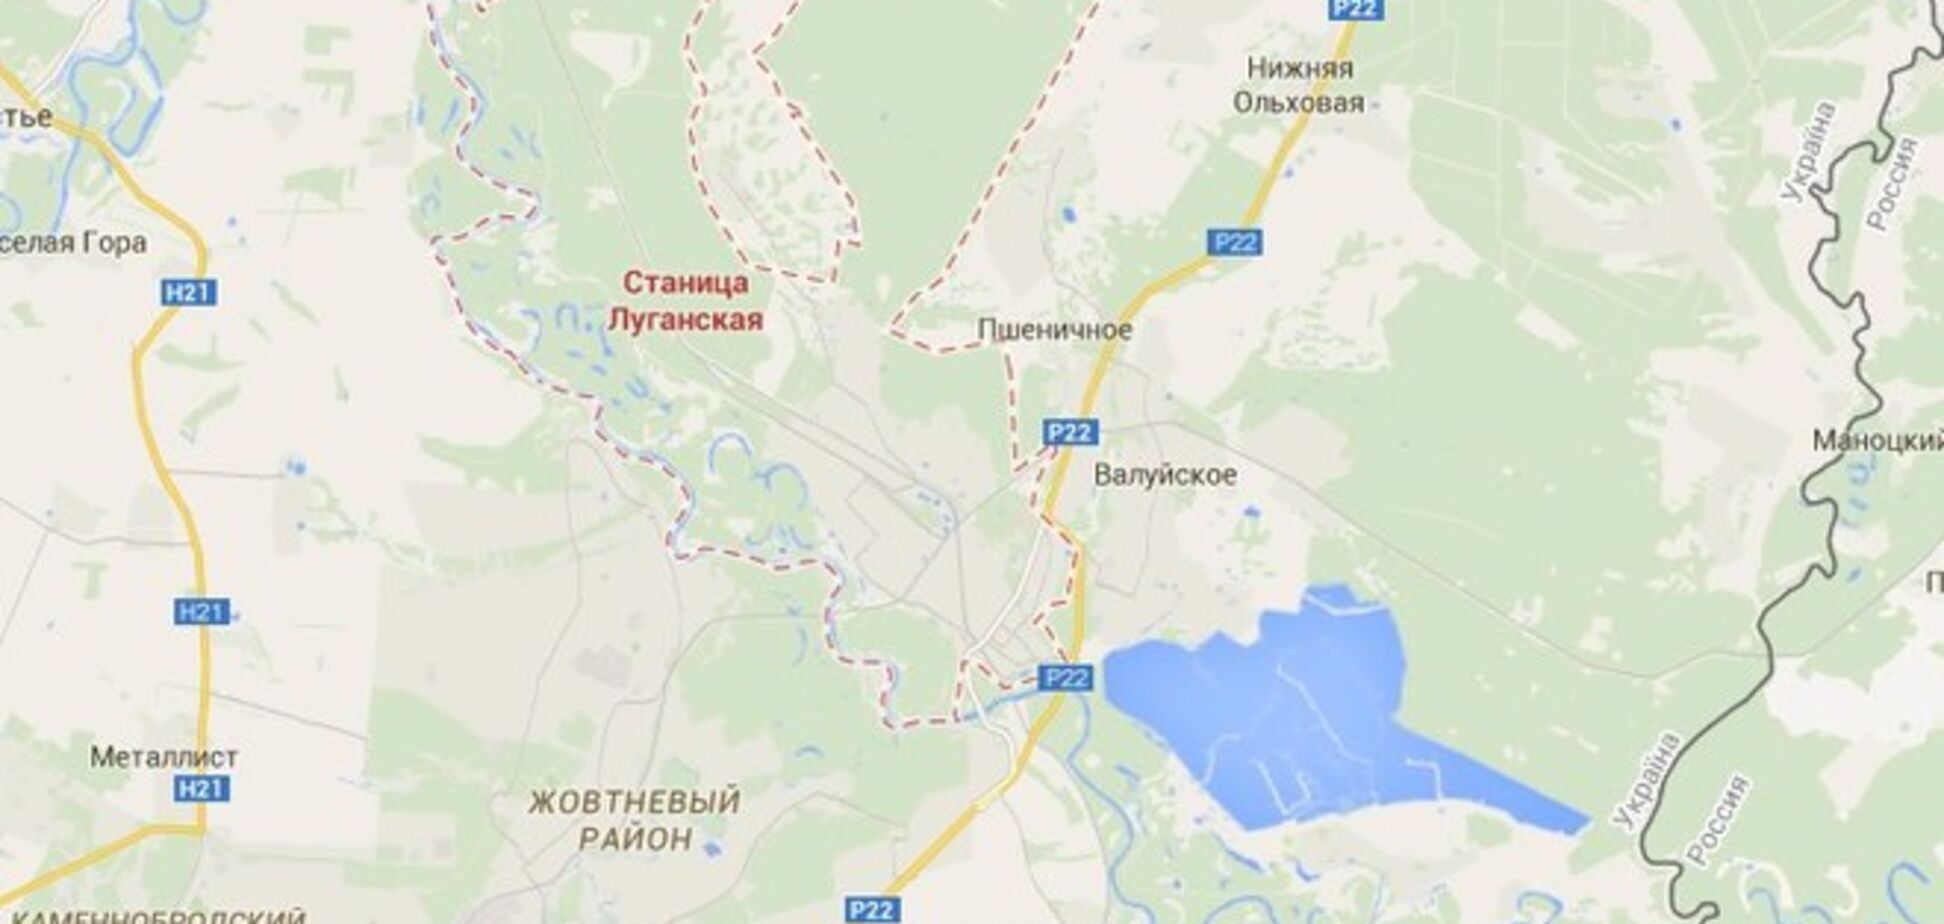 Ночью боевики установили 'Град' в центре Луганска и накрыли снарядами Станично-Луганский район